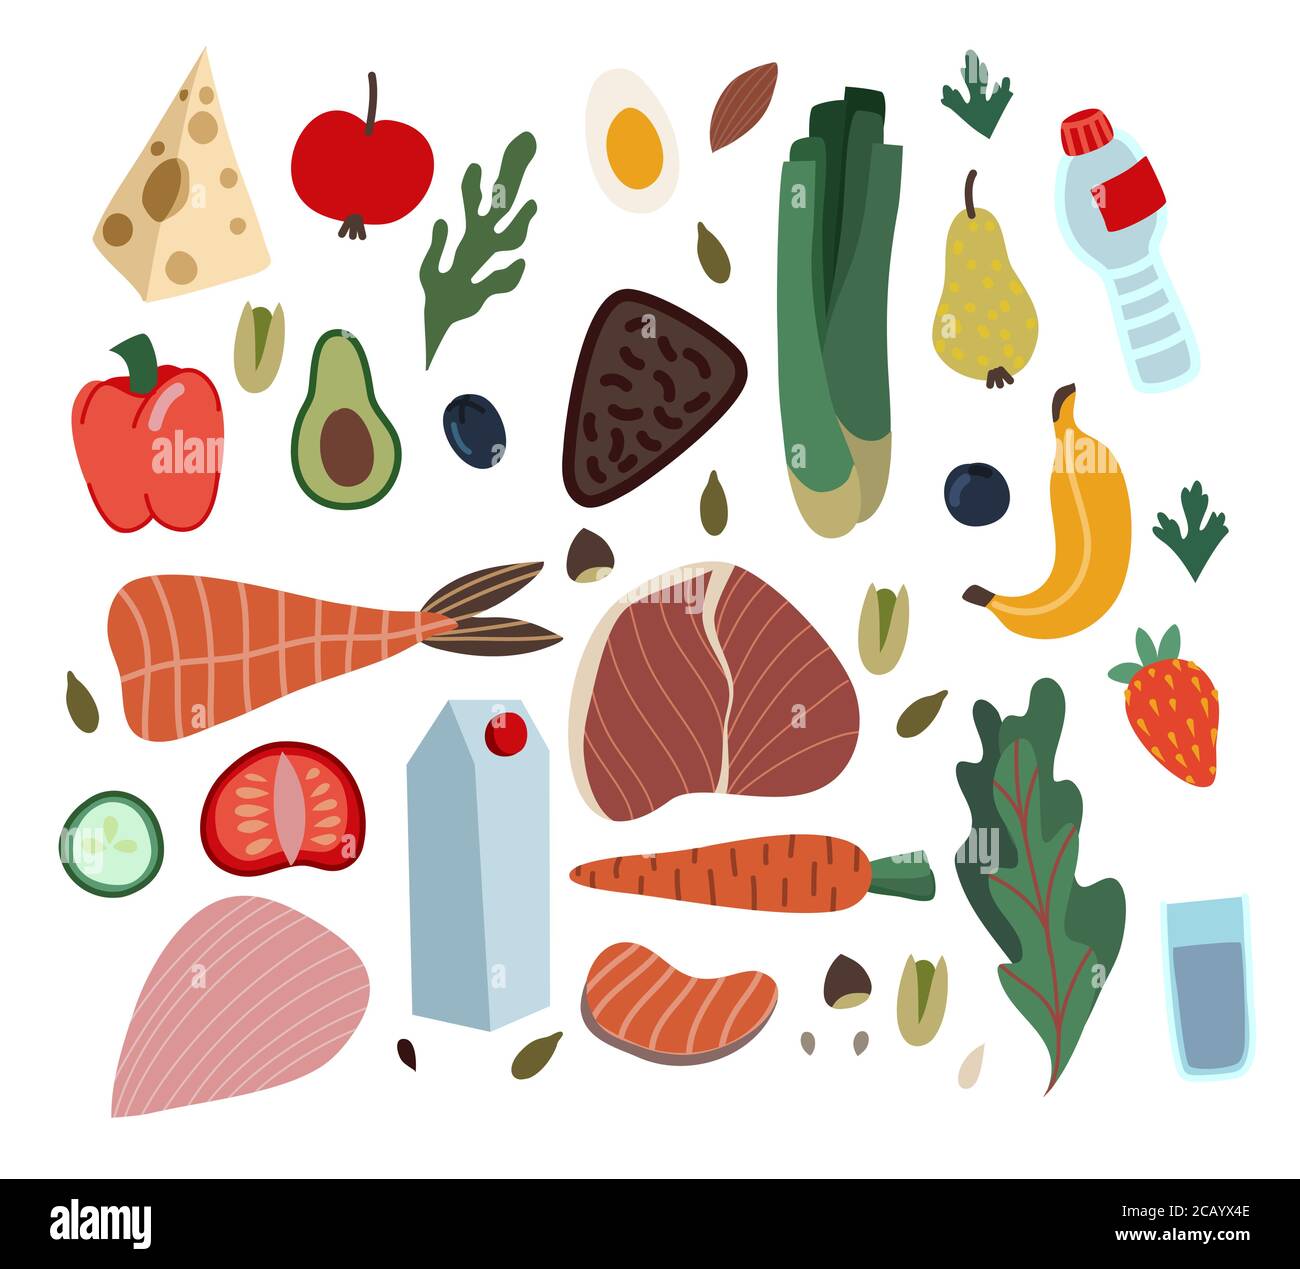 Conjunto de alimentos saludables como comida, verduras y frutas.  Ilustración plana de dibujos animados vectoriales Imagen Vector de stock -  Alamy